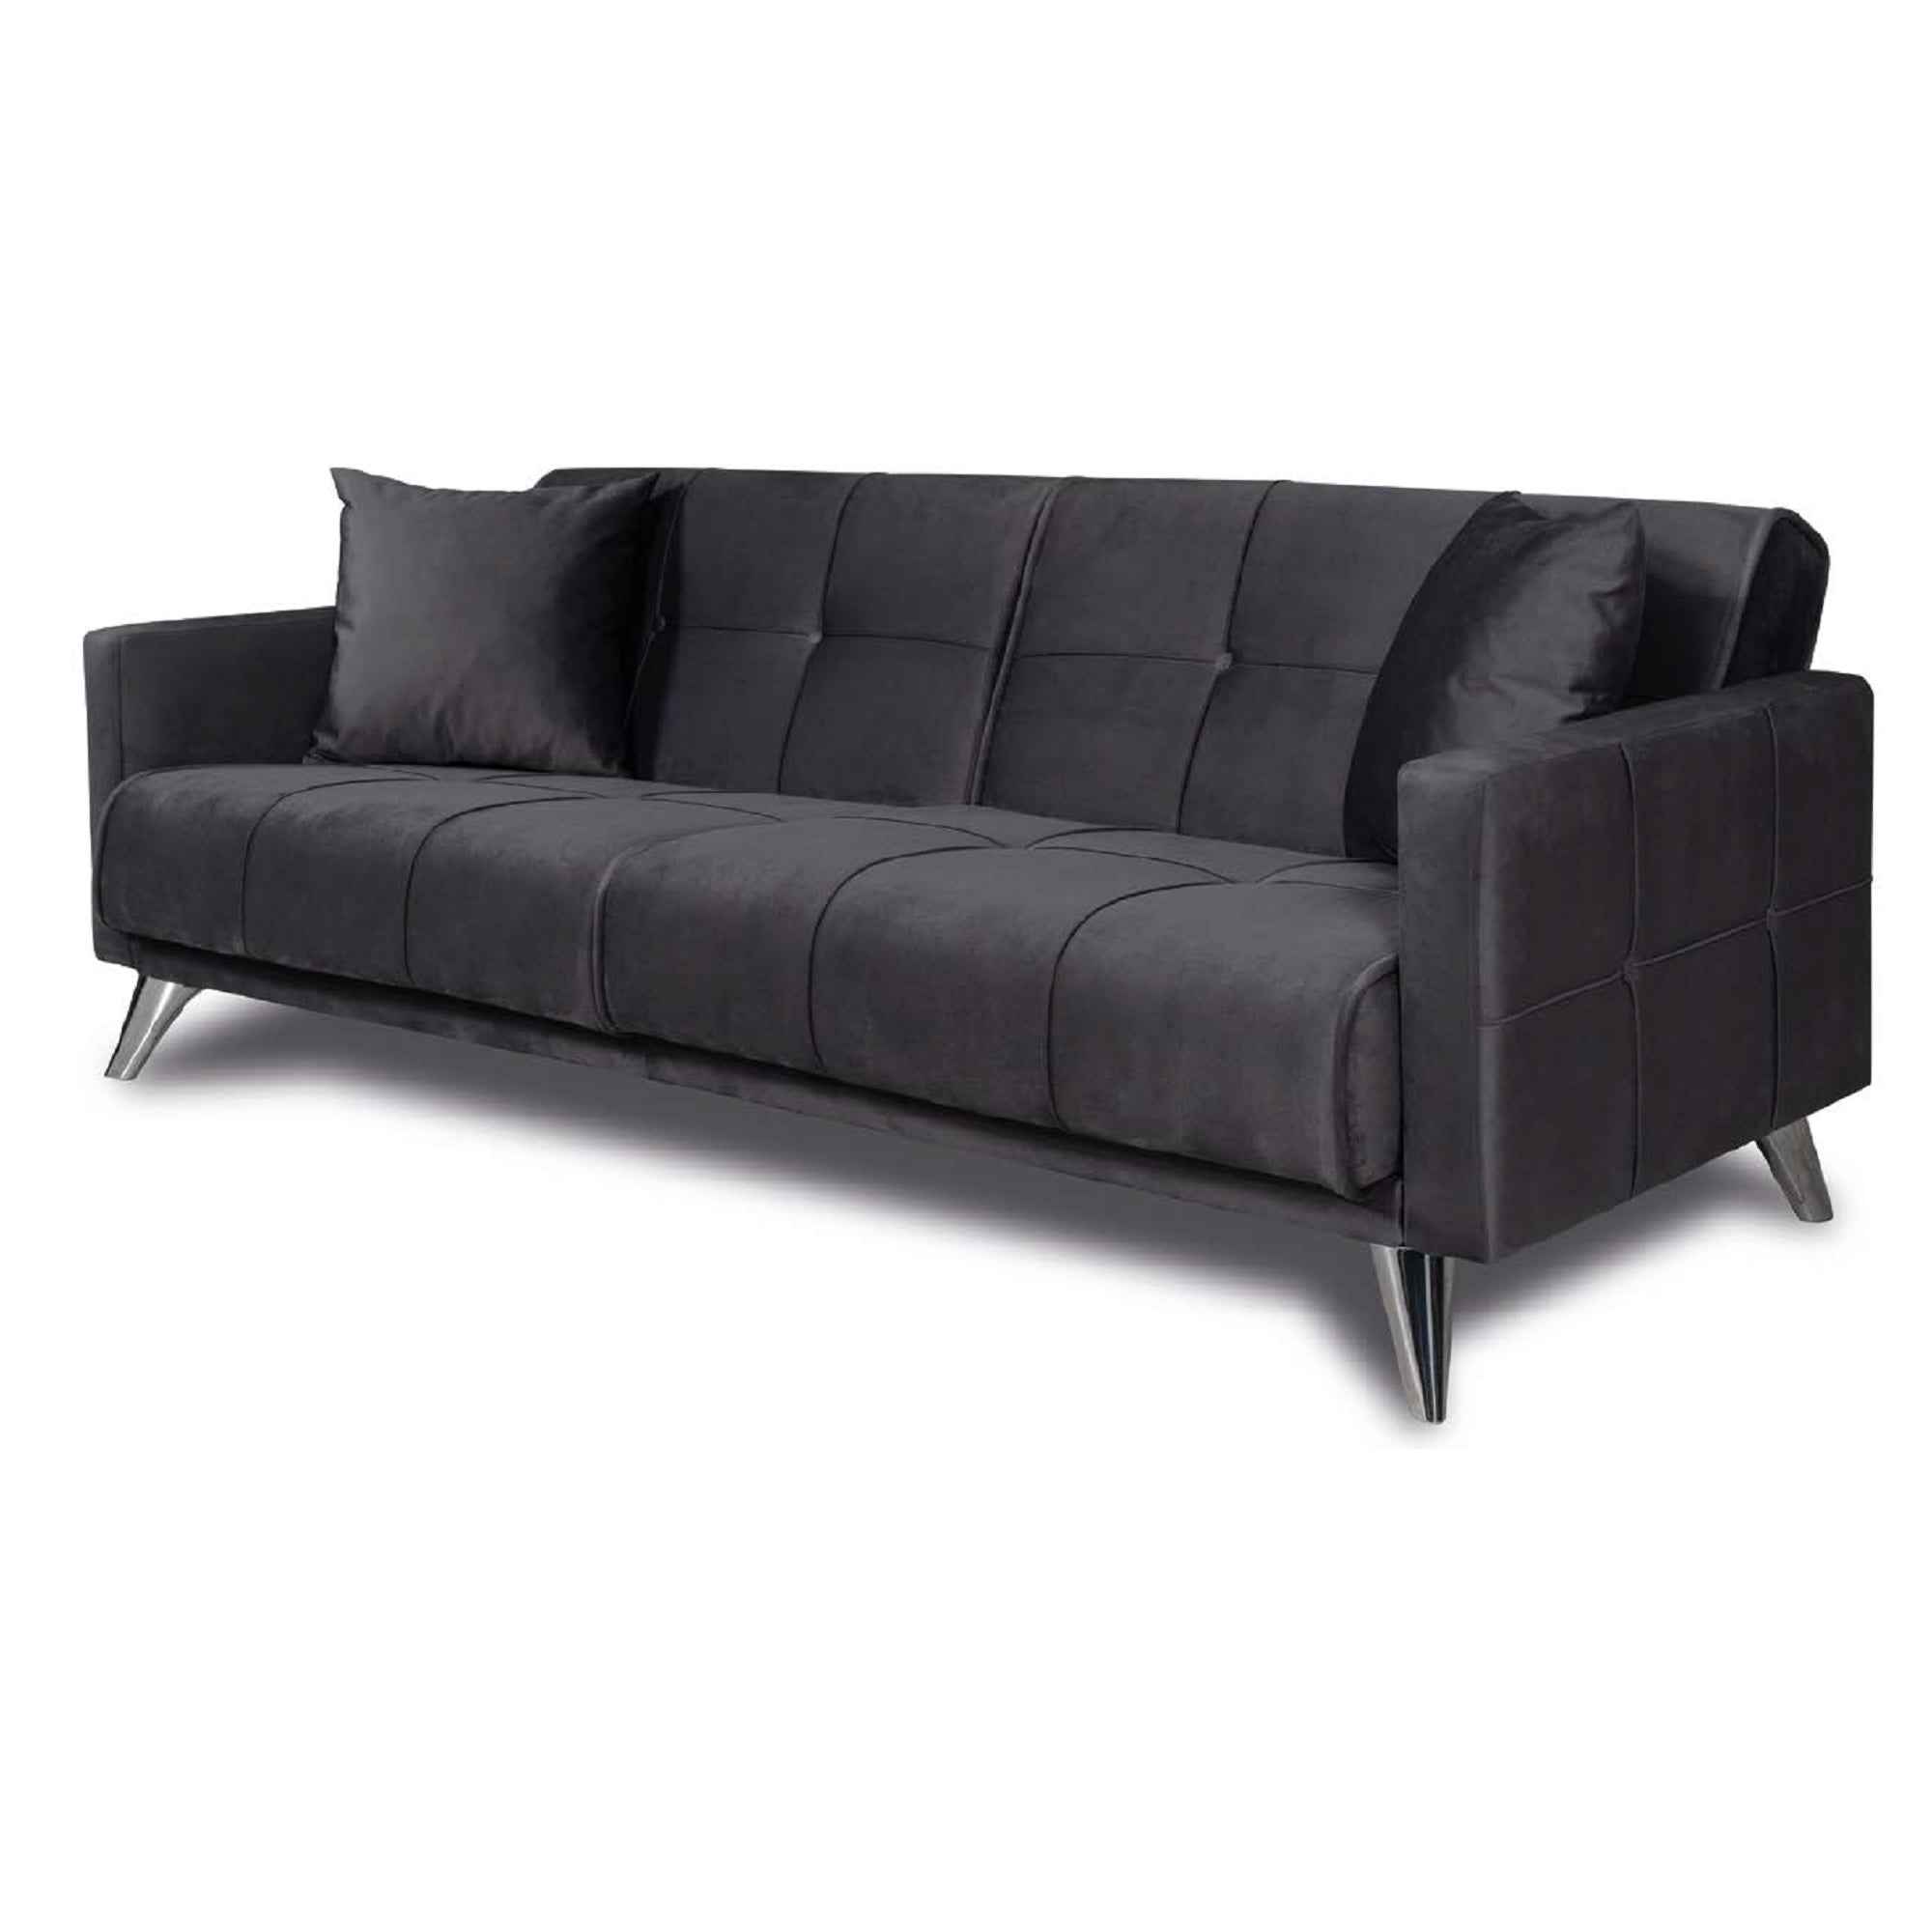 ViscoLogic SOFA2GO Velvet Convertible Sleeper Sofa Bed 3 Seater (Black)